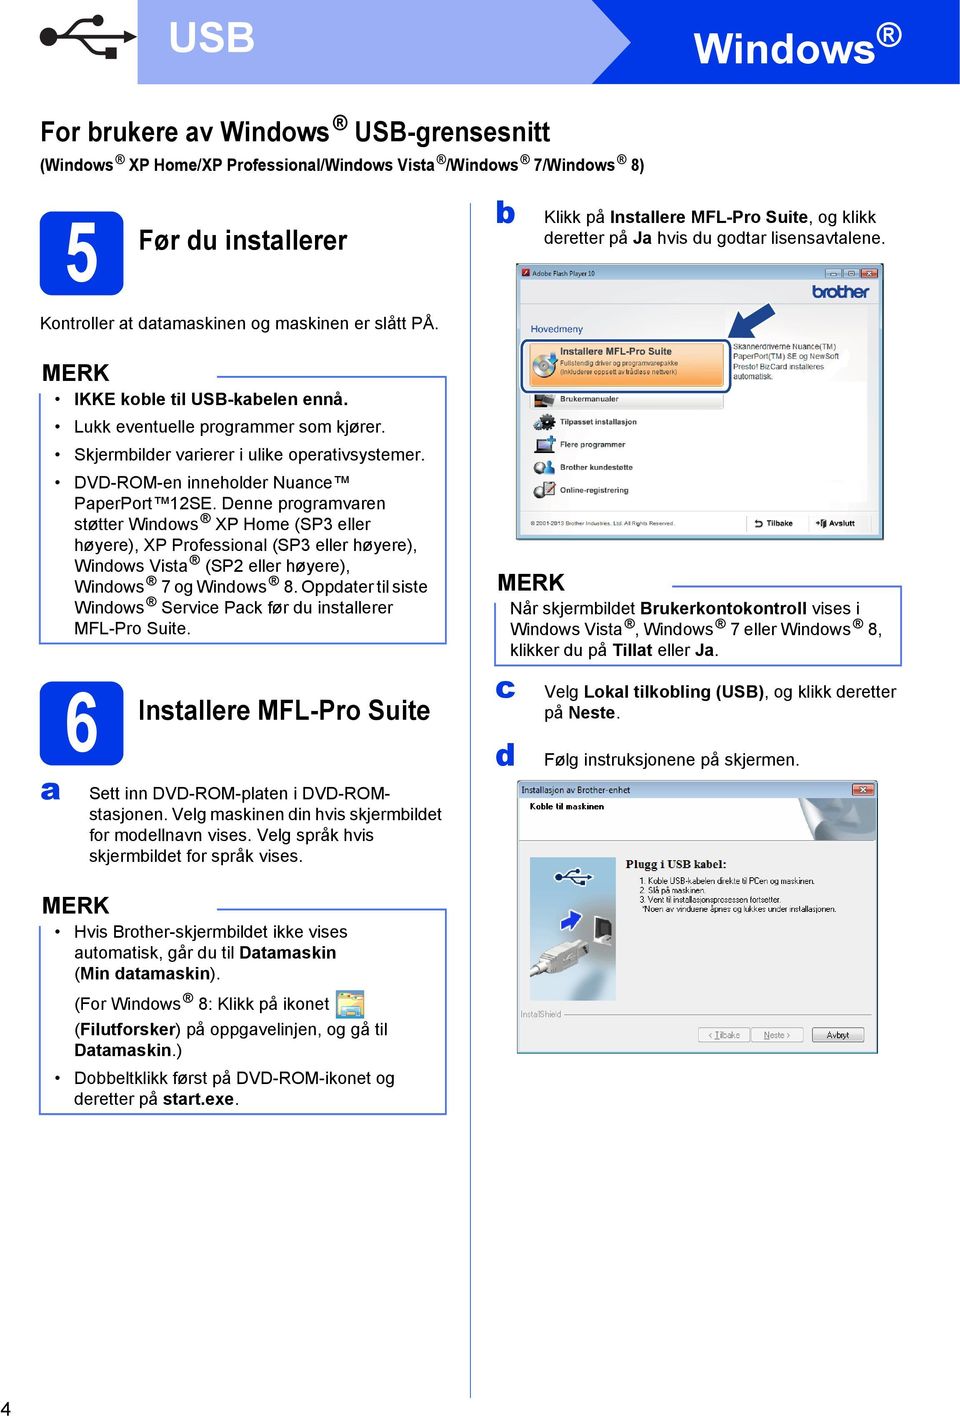 DVD-ROM-en inneholder Nunce PperPort 12SE. Denne progrmvren støtter Windows XP Home (SP3 eller høyere), XP Professionl (SP3 eller høyere), Windows Vist (SP2 eller høyere), Windows 7 og Windows 8.